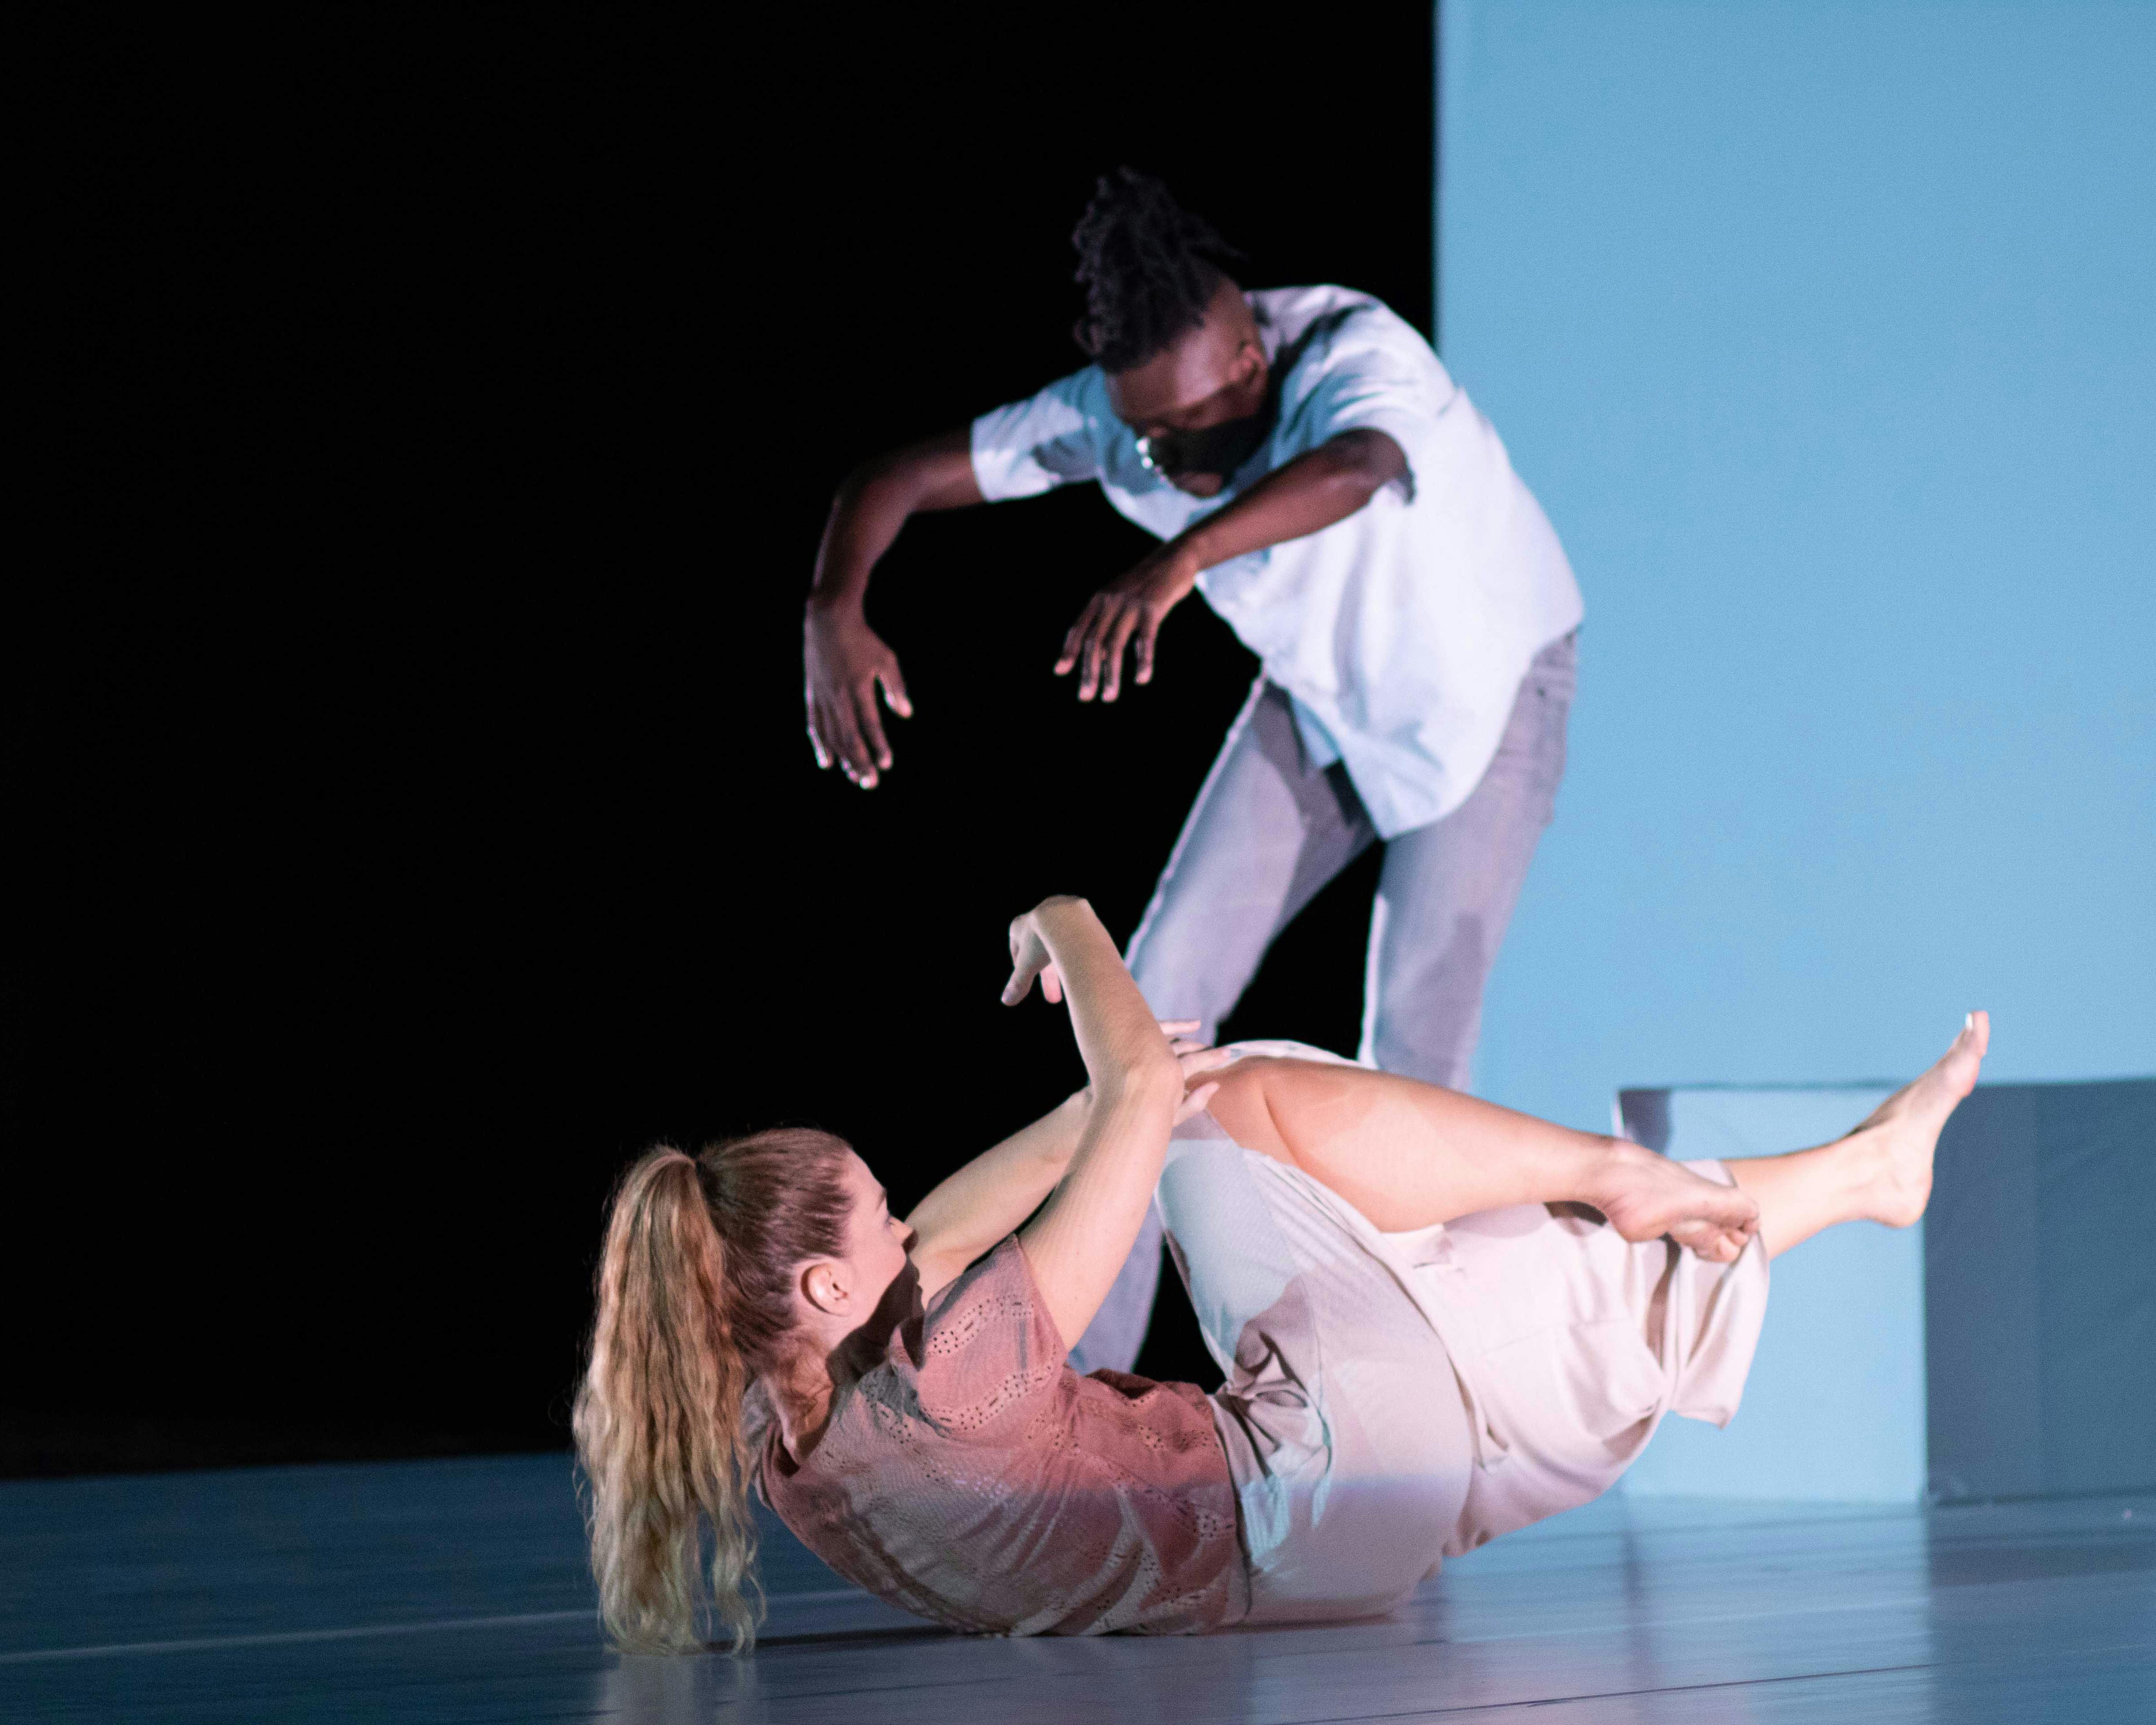 Sarah Bockers e Dodzi Dougban sul palco durante la performance Gravity.  Le è con la schiena a terra, braccia e gambe sollevate dal palco; lui è in piedi, con la schiena in contrazione e le braccia allungate in avanti.